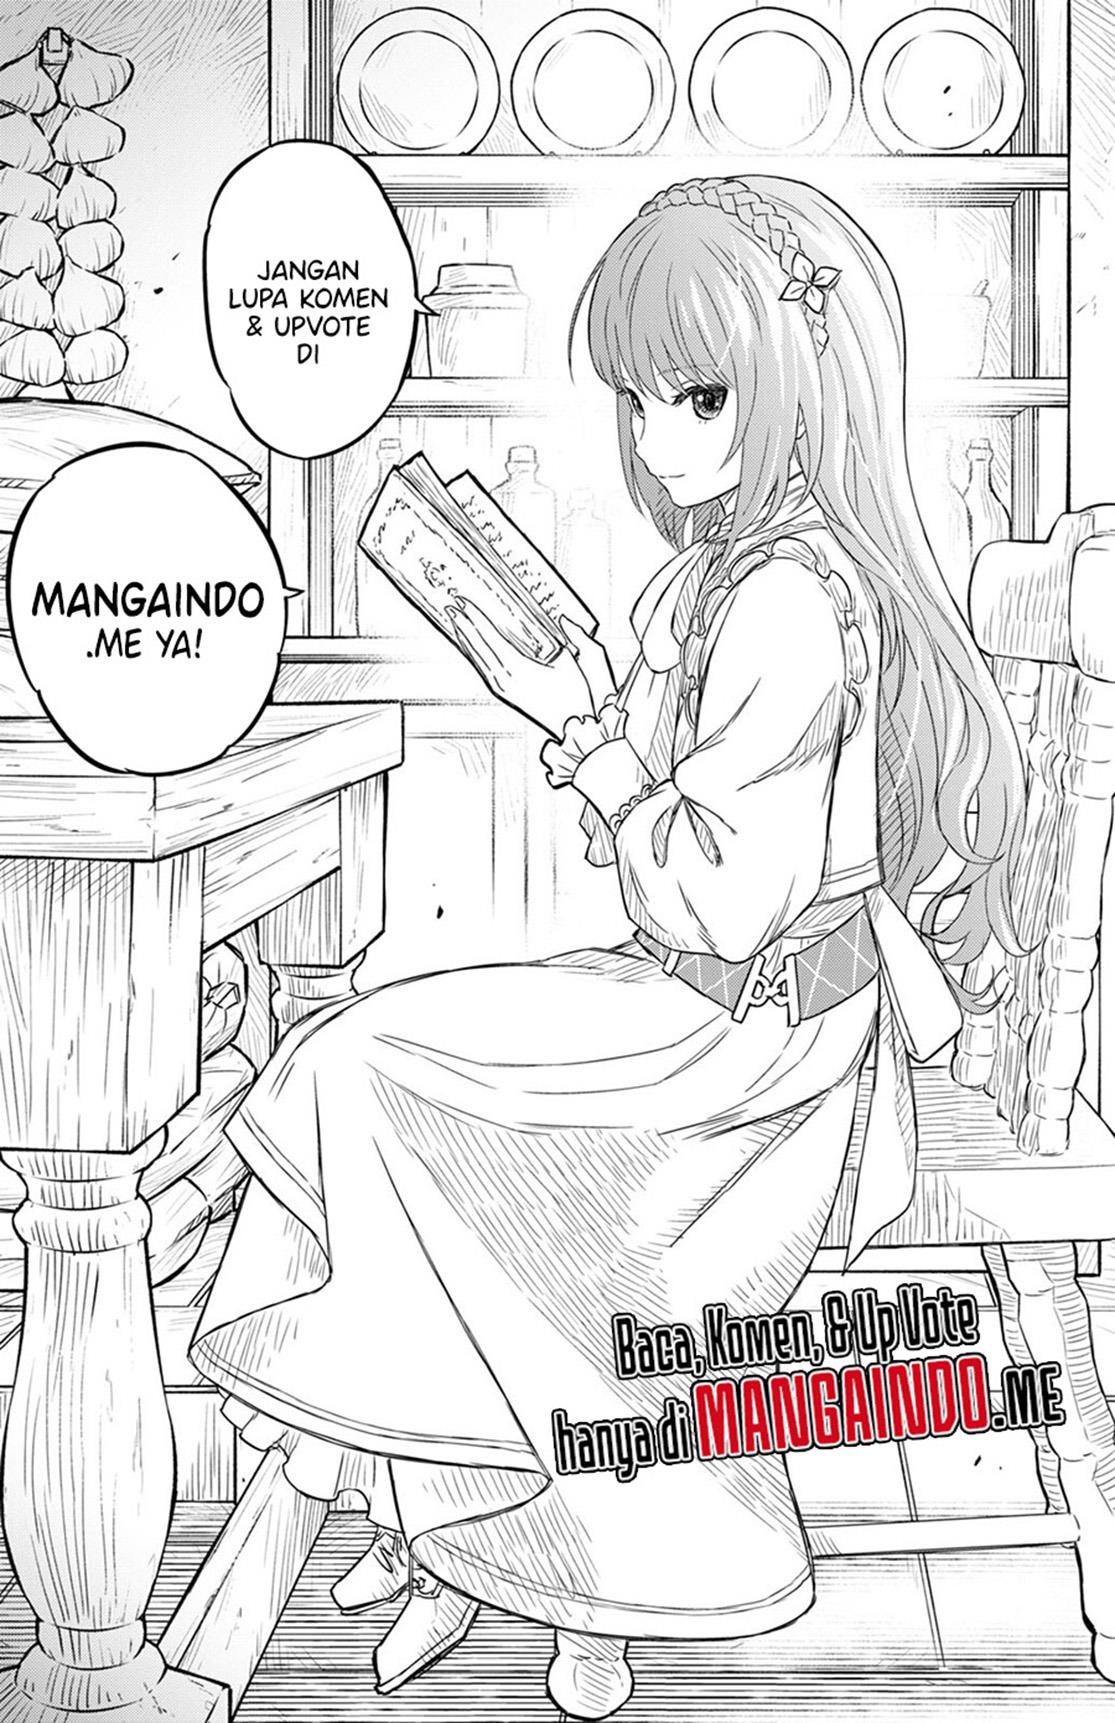 Monogatari no Kuromaku ni Tensei shite Chapter 8